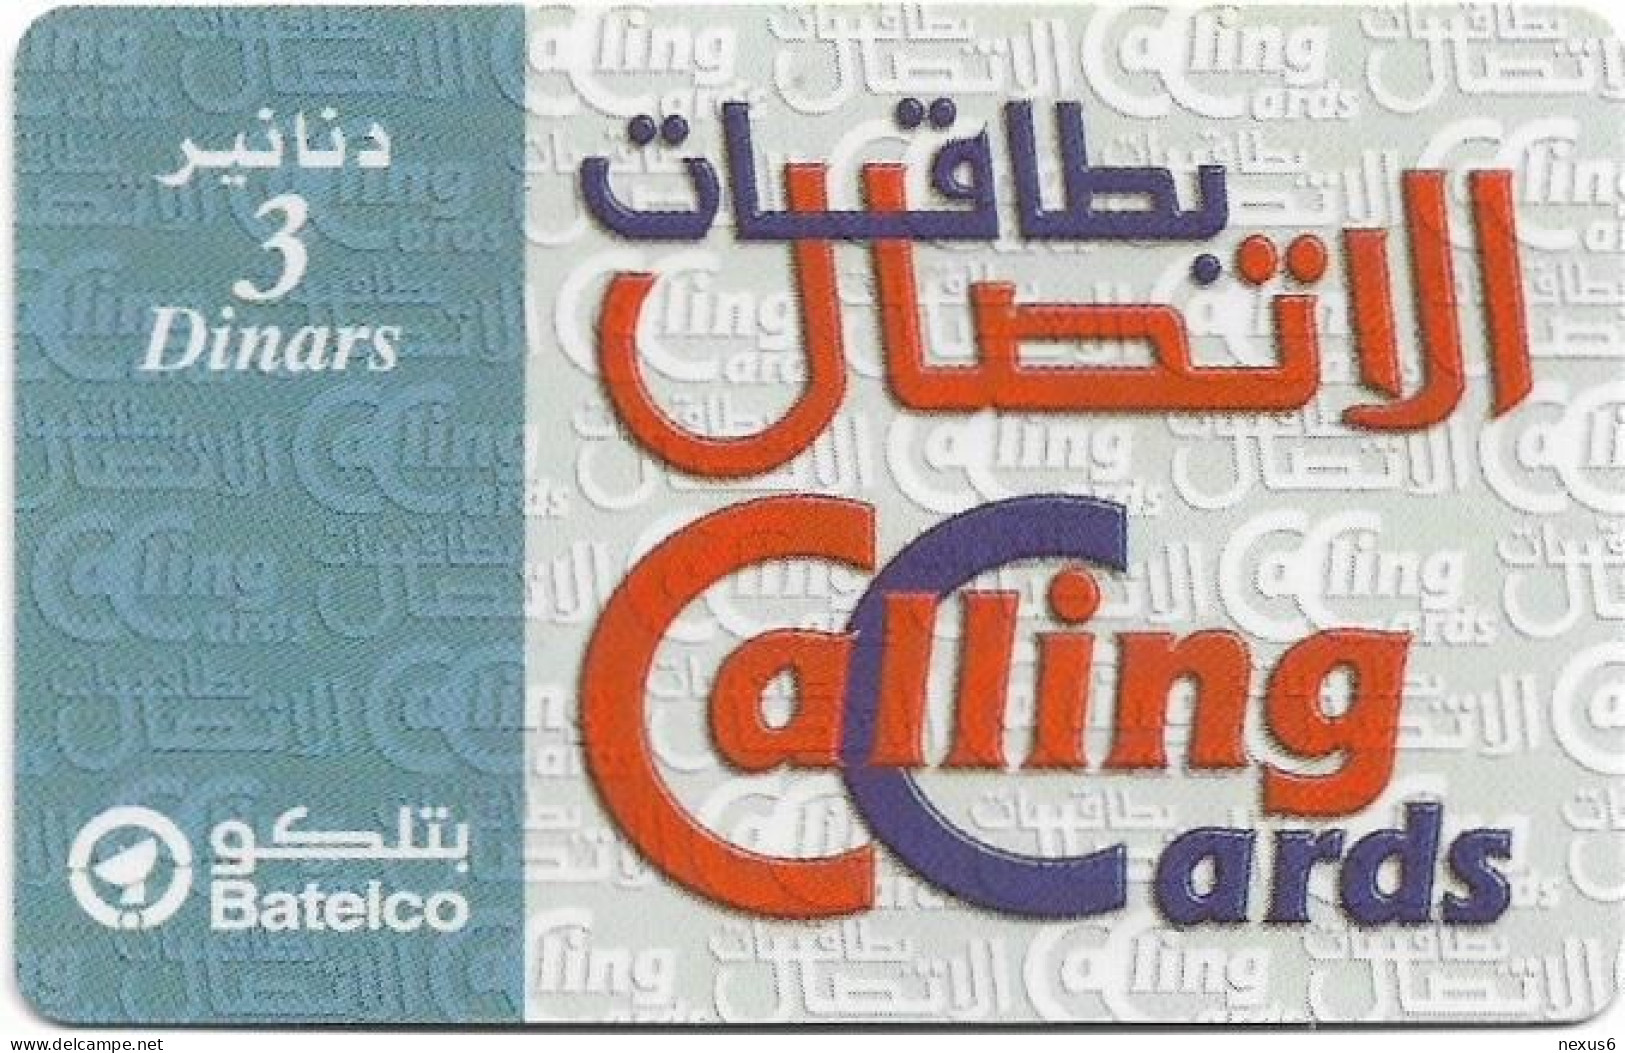 Bahrain - Batelco - Calling Cards (Light Blue), 3BD Prepaid Card, Used - Baharain